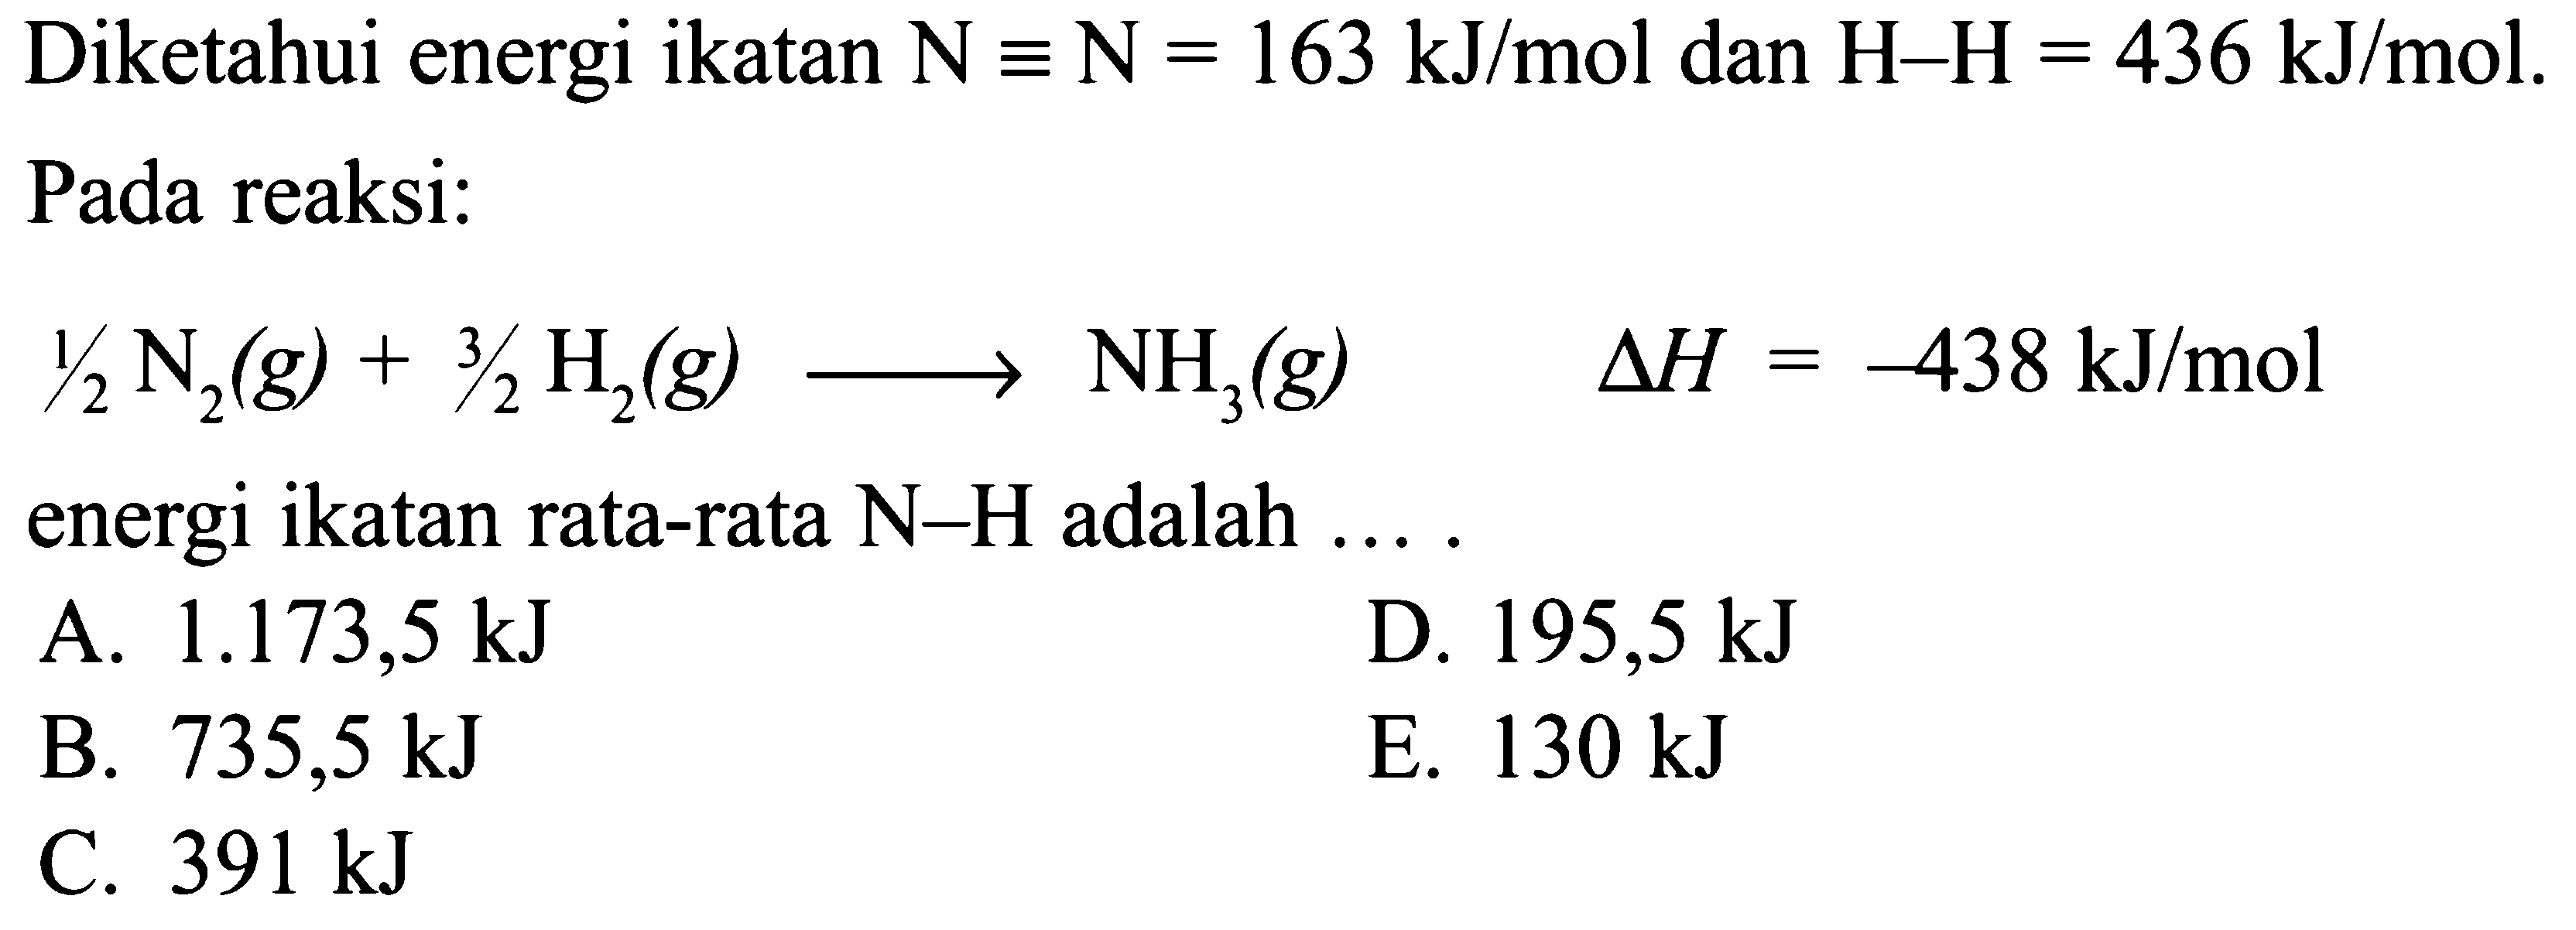 Diketahui energi ikatan N ekuivalen N=163 kJ/mol dan H-H=436 kJ/mol. Pada reaksi: 1/2N2(g)+3/2H2(g) -> NH3(g) delta H=-438 kJ/mol energi ikatan rata-rata N-H adalah .... 